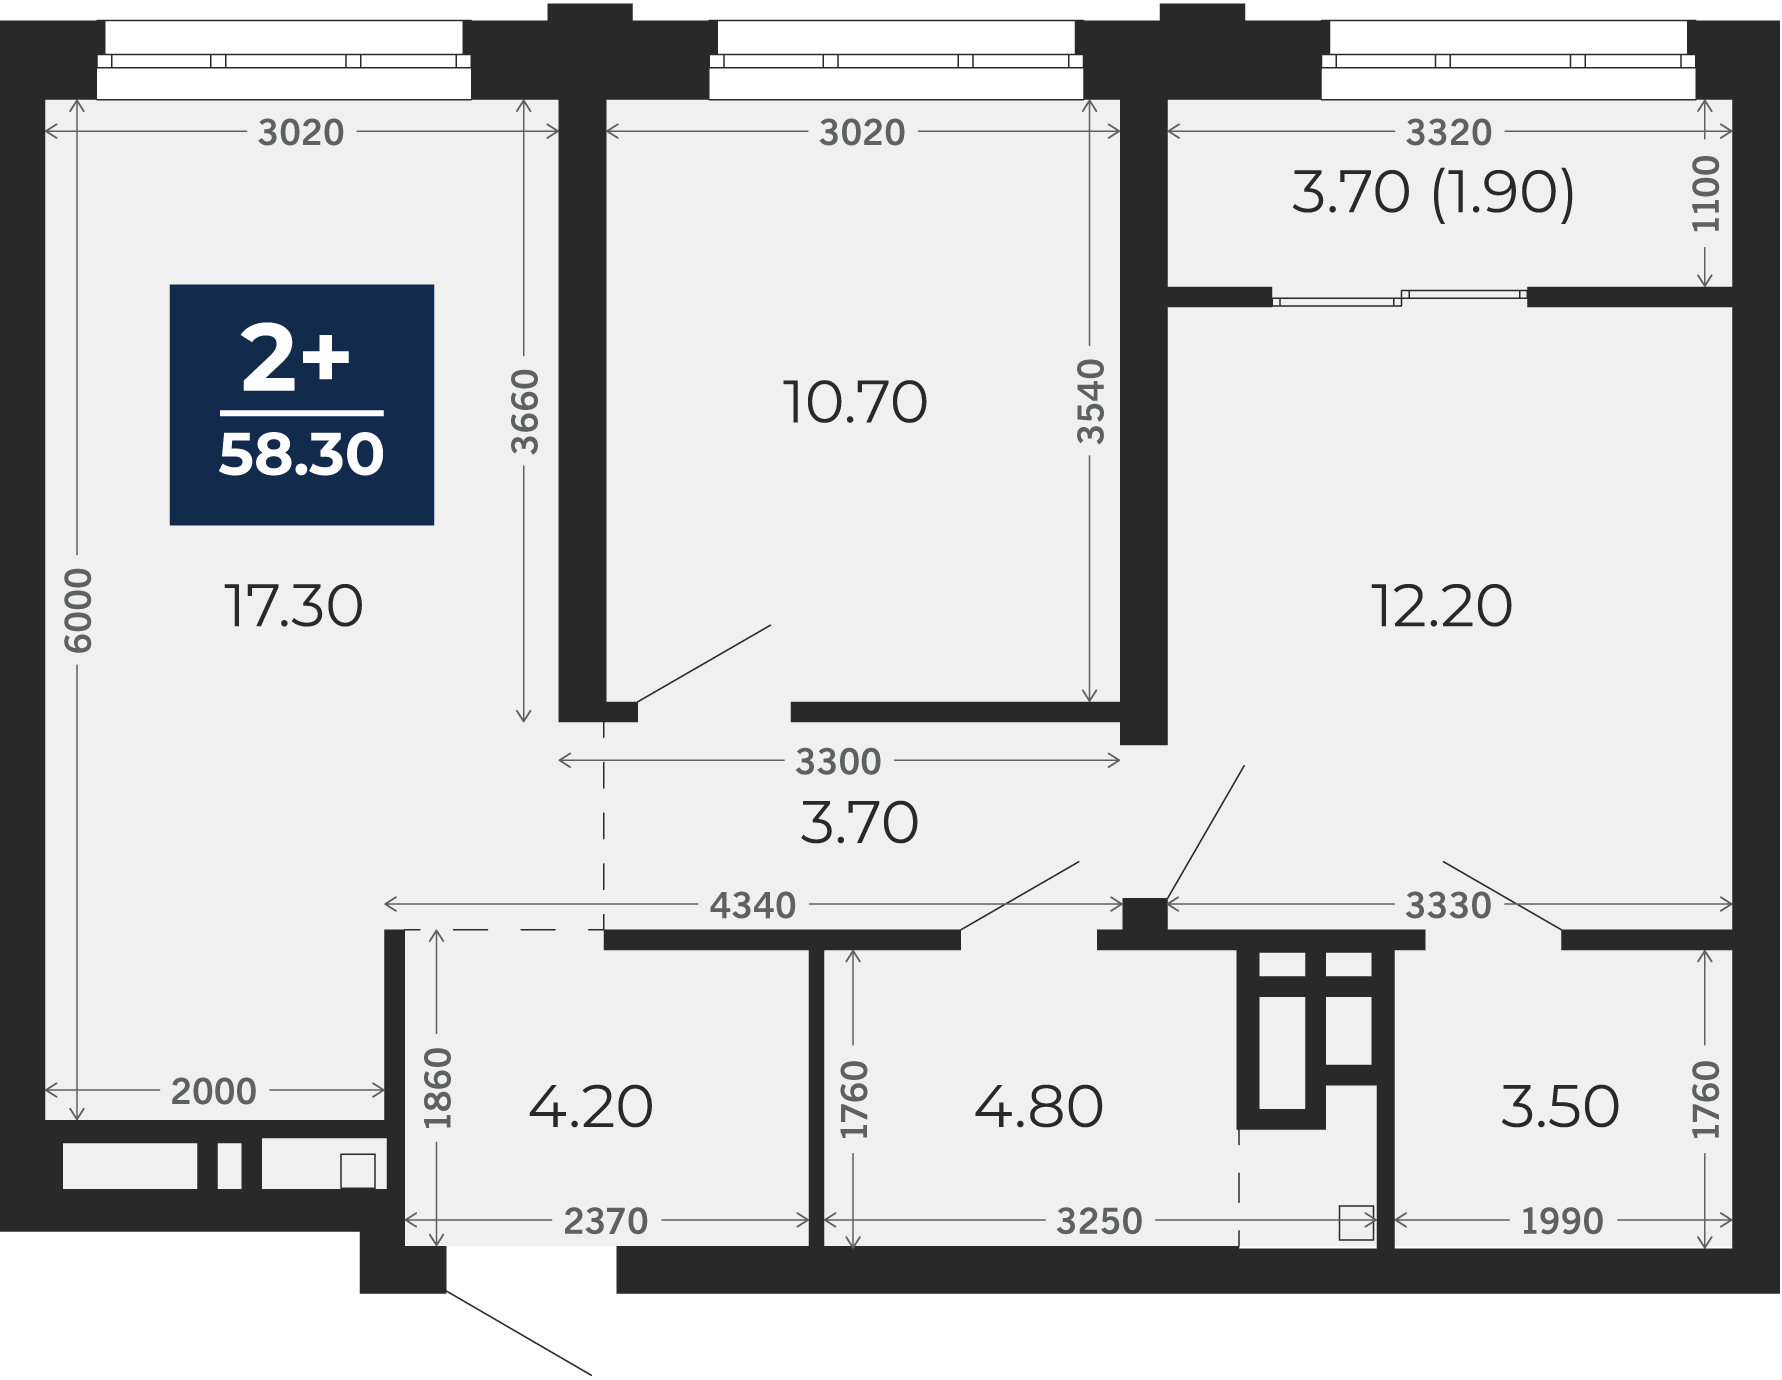 Квартира № 276, 2-комнатная, 58.3 кв. м, 5 этаж